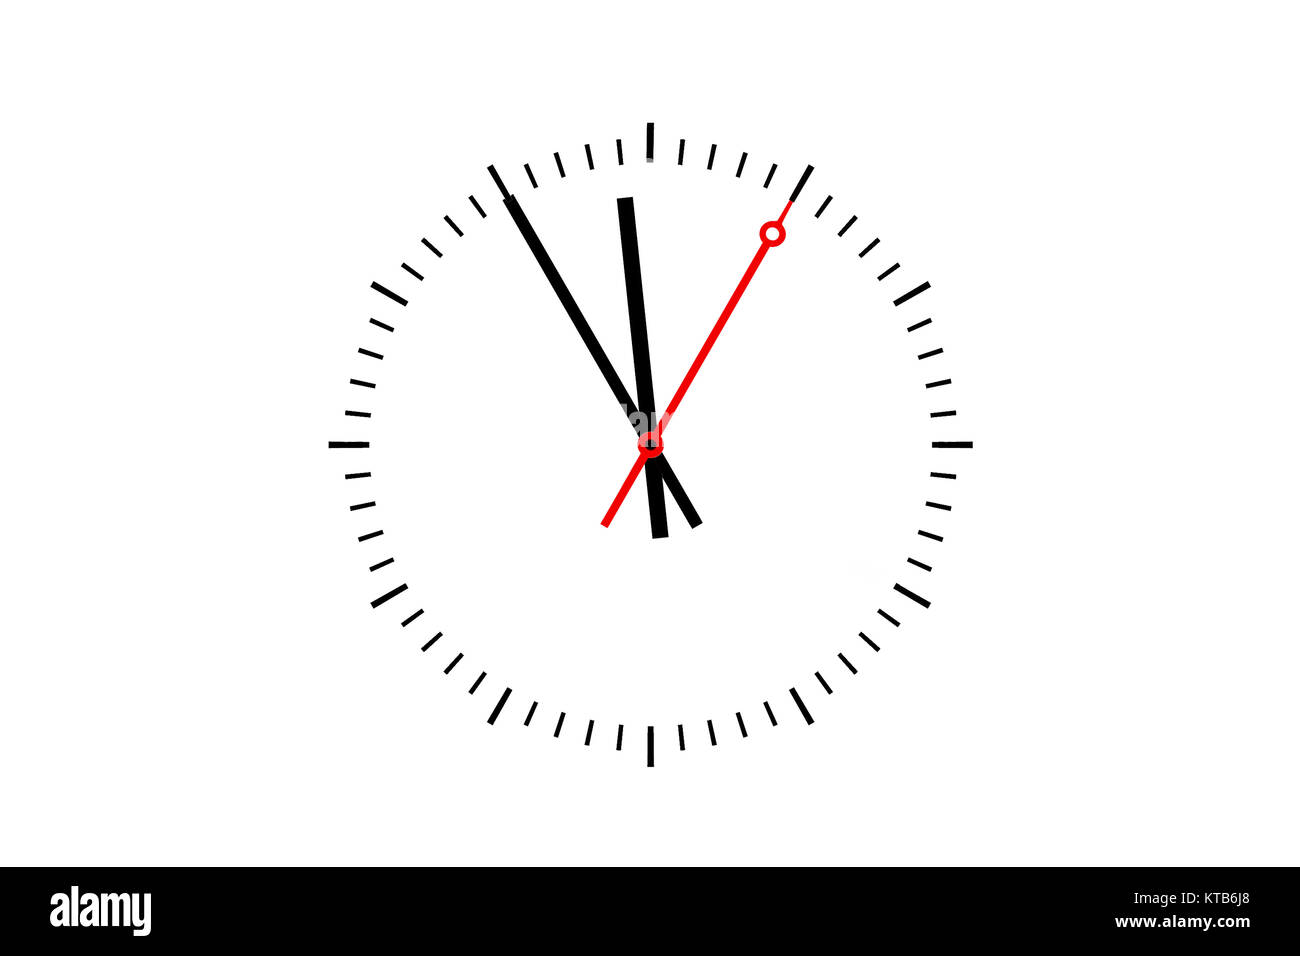 Uhr, Ziffernblatt mit Minutenzeiger und rotem Sekundenzeiger zeigt die Uhrzeit 5 vor 12 an.  Texfreiraum auf weißen Hintergrund. Stock Photo